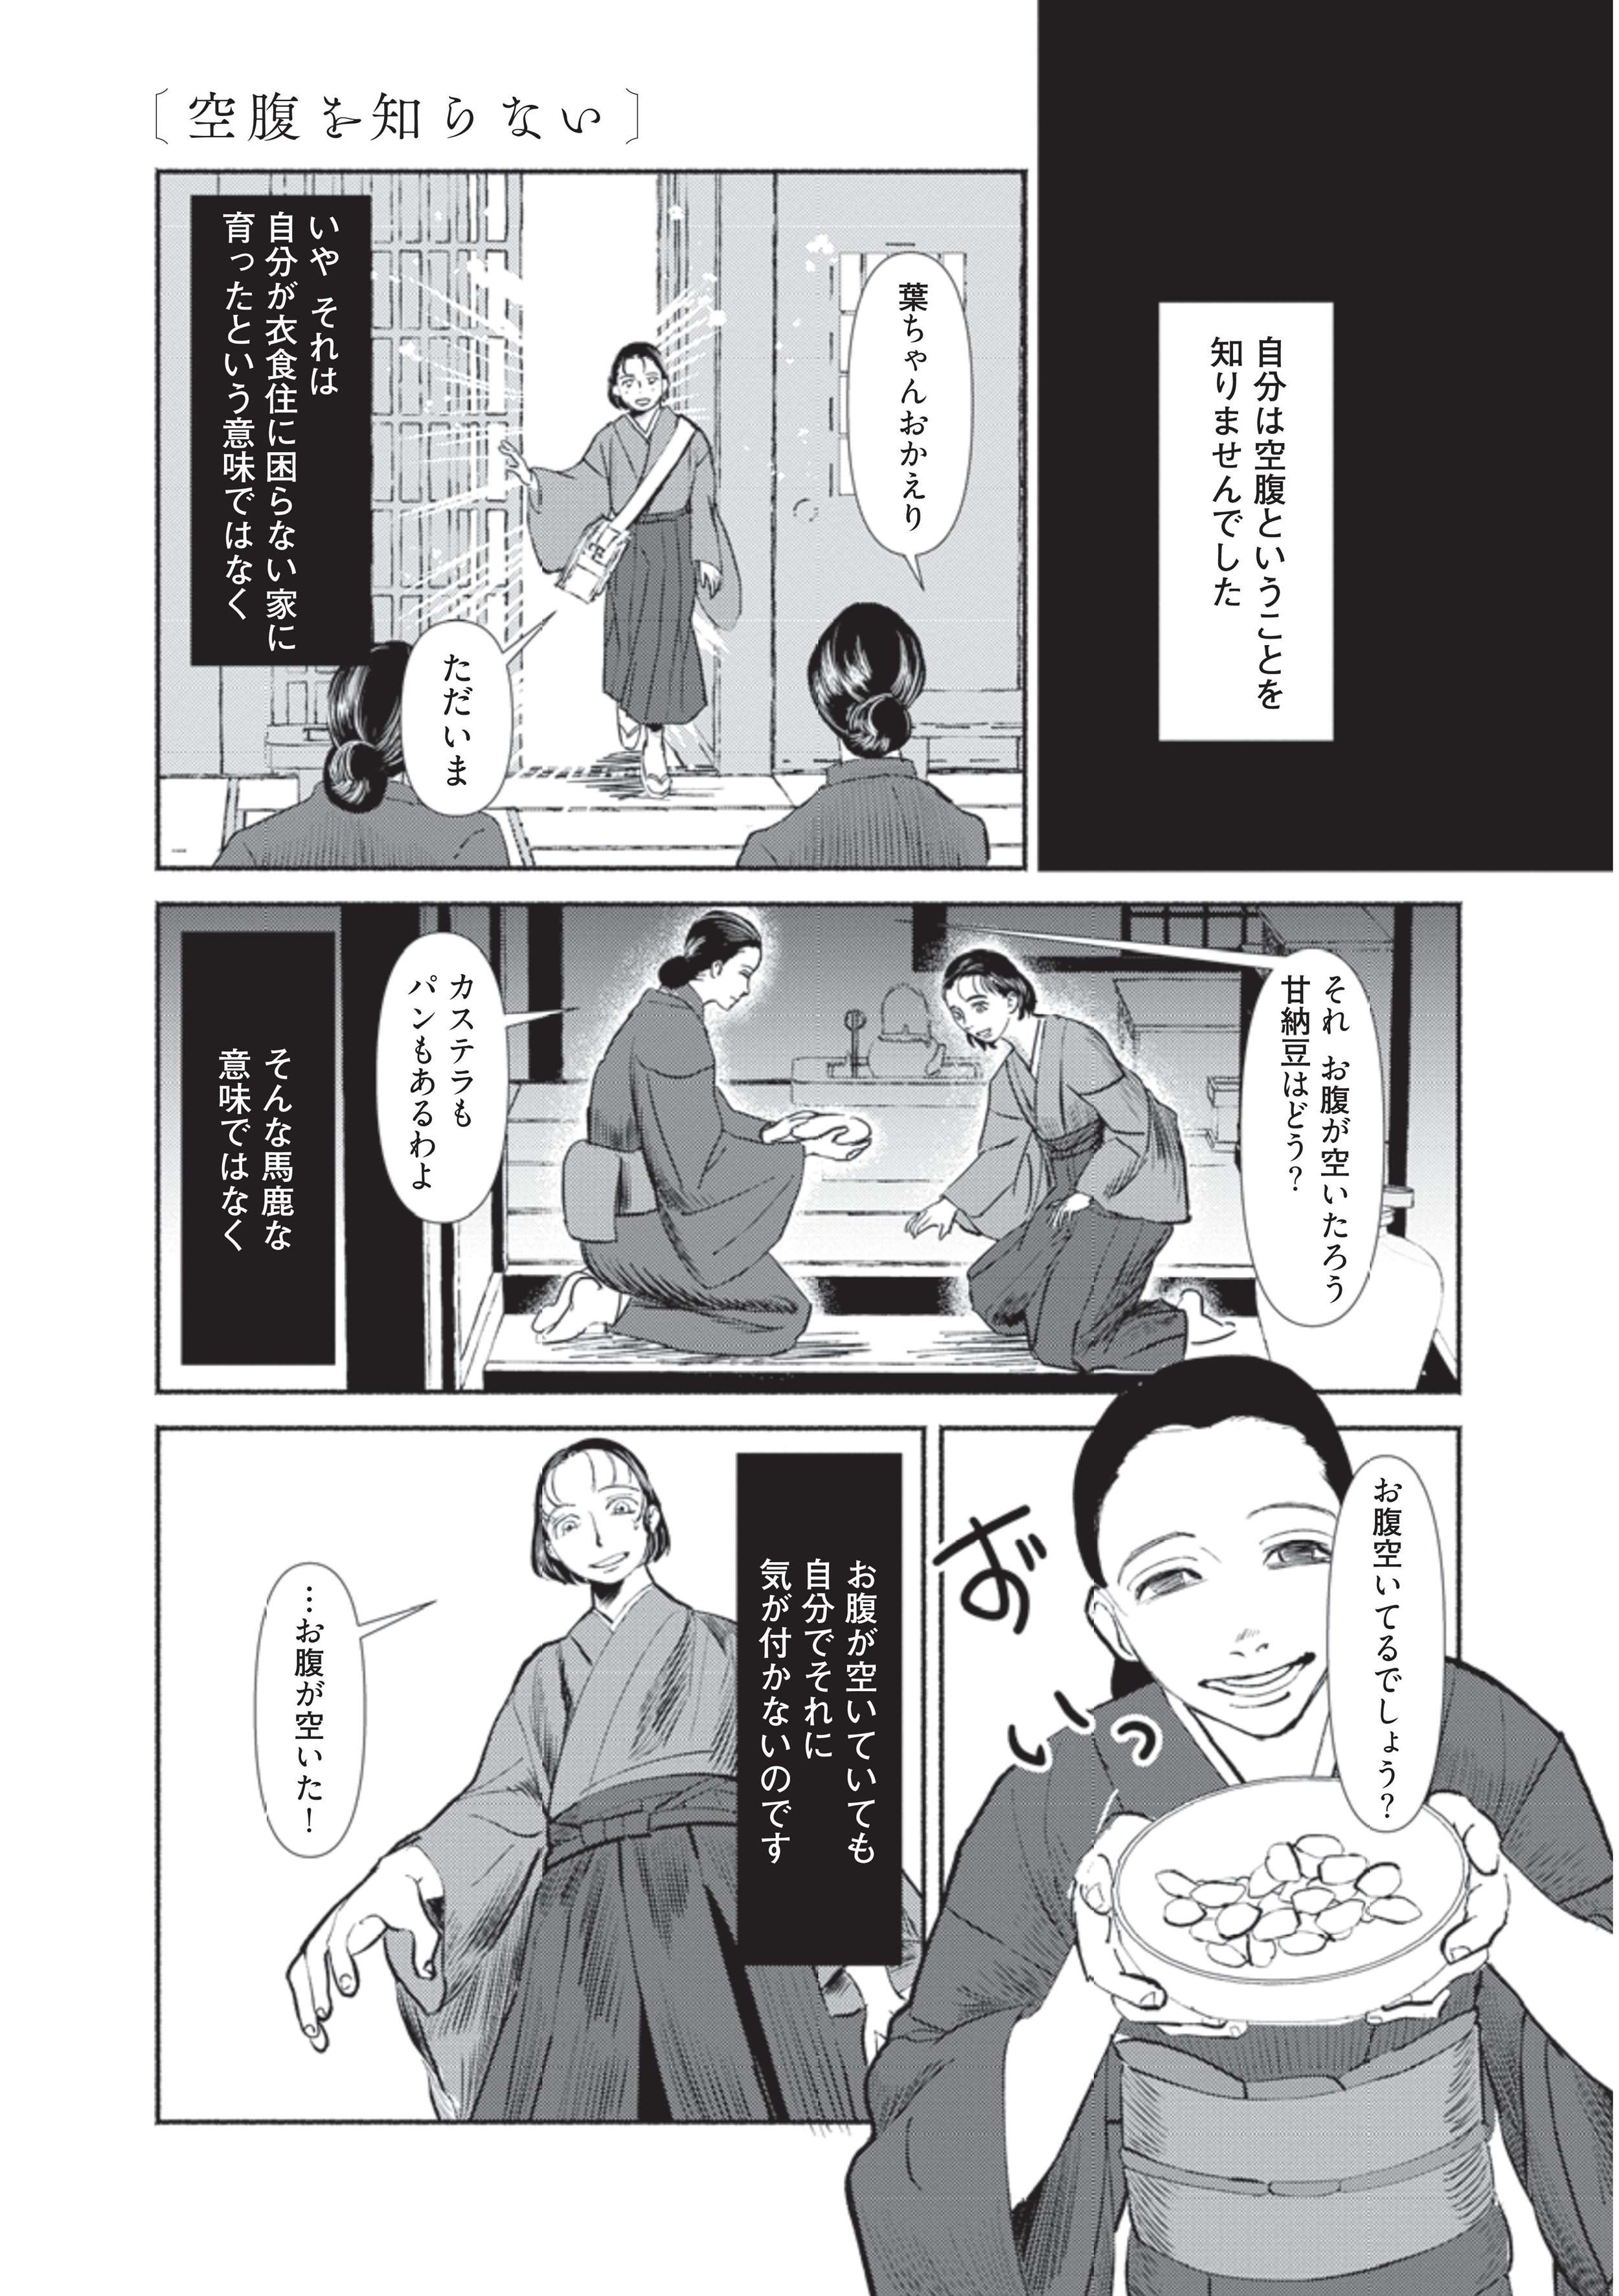 空腹がわからない。少年は「人間の普通の感覚」を理解できずに育つ／漫画 人間失格 manga_ningenshikkaku2-3.jpg